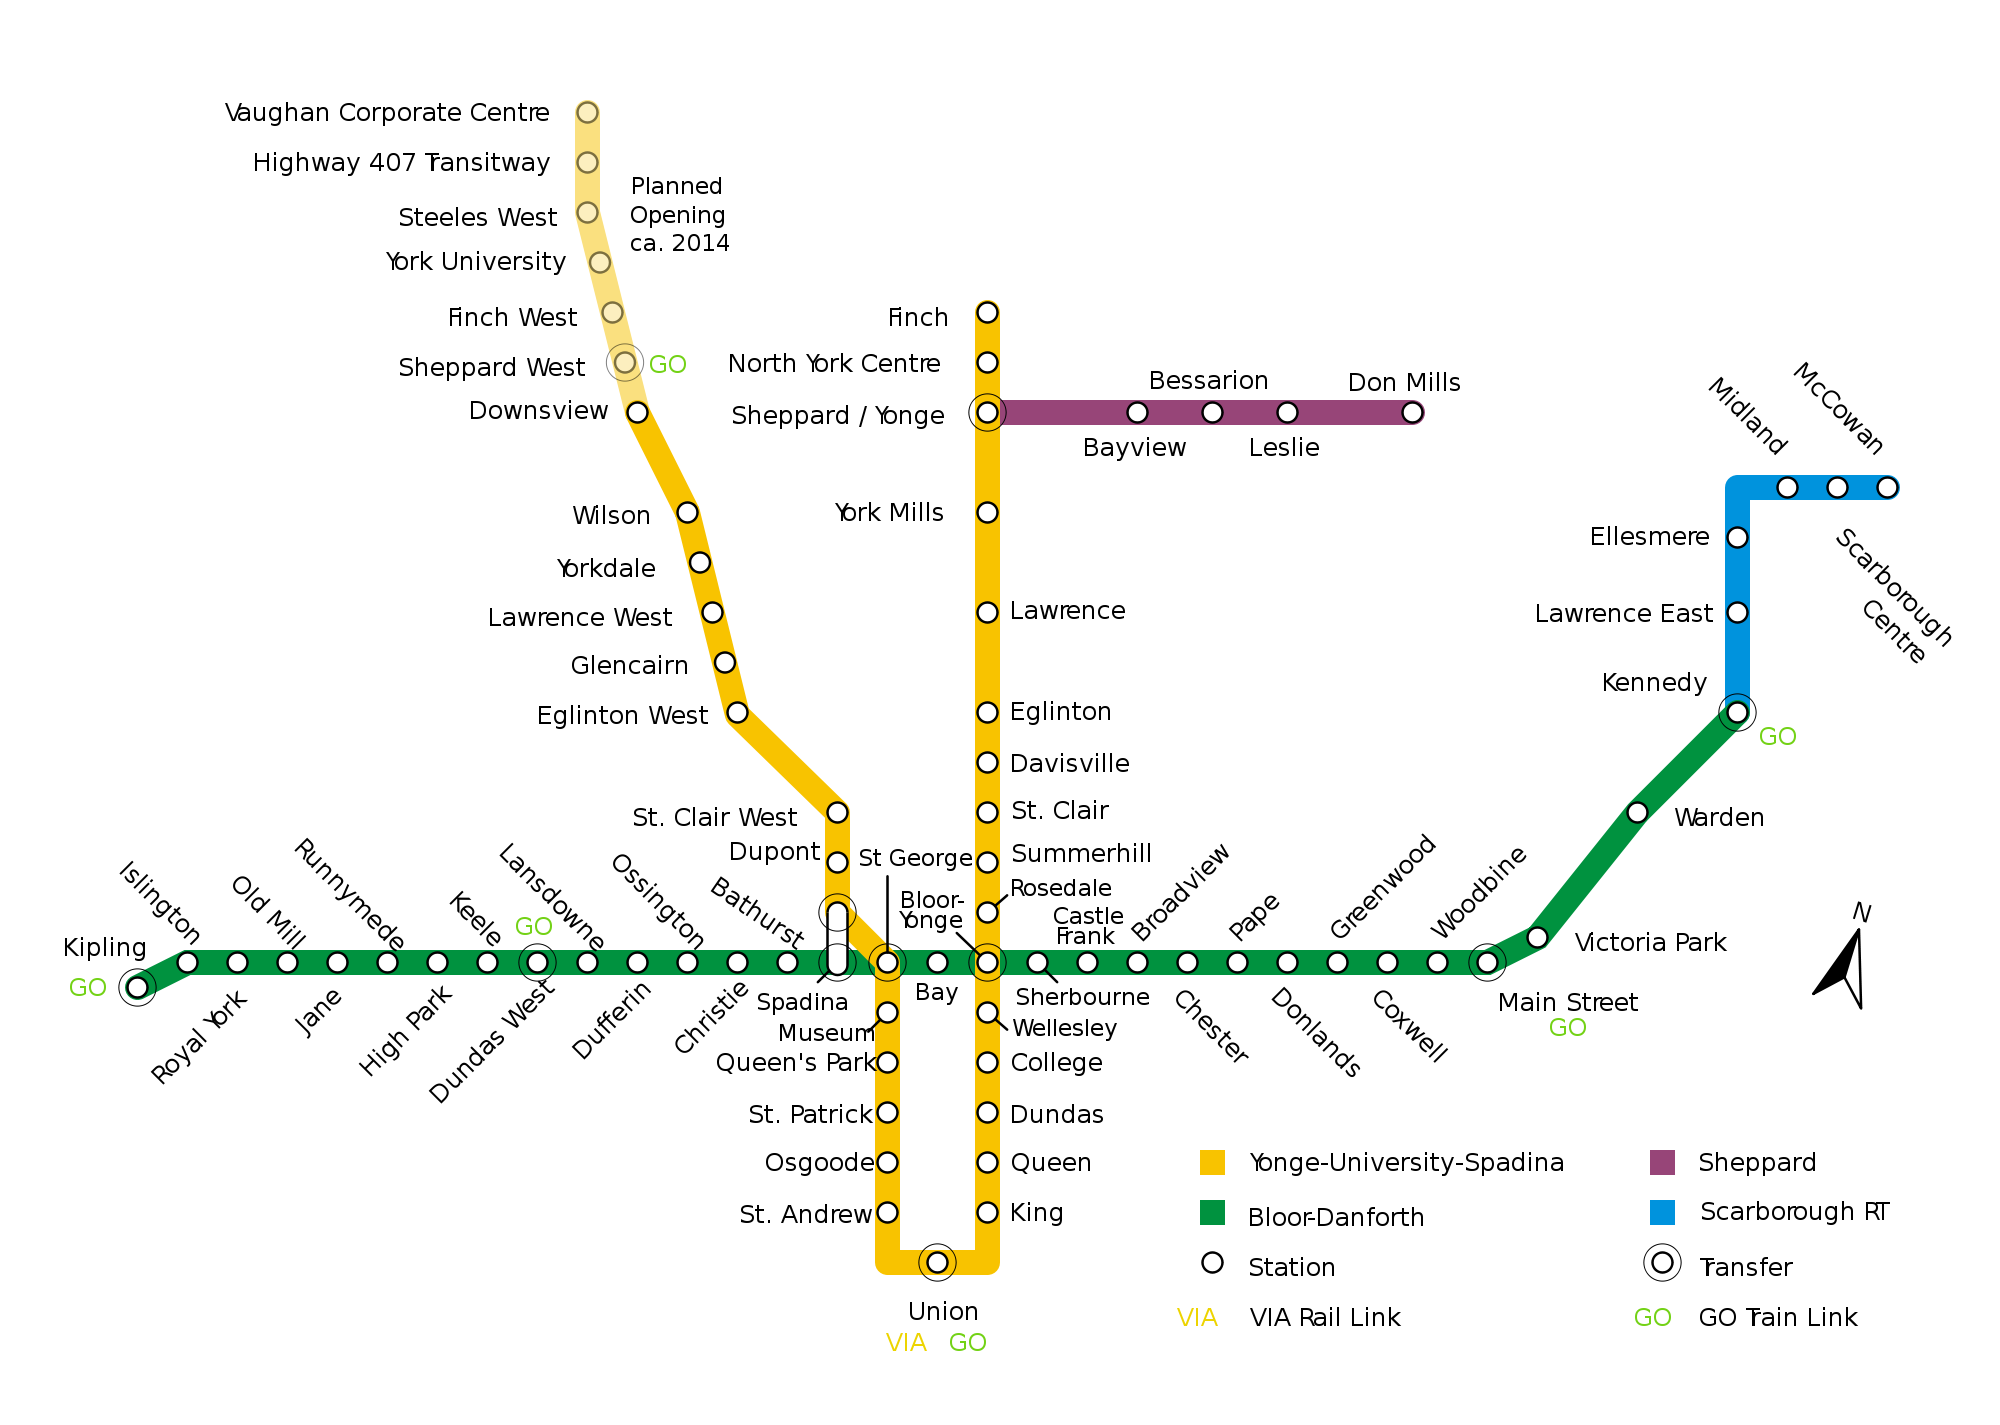 Plan de mÃ©tro de Toronto